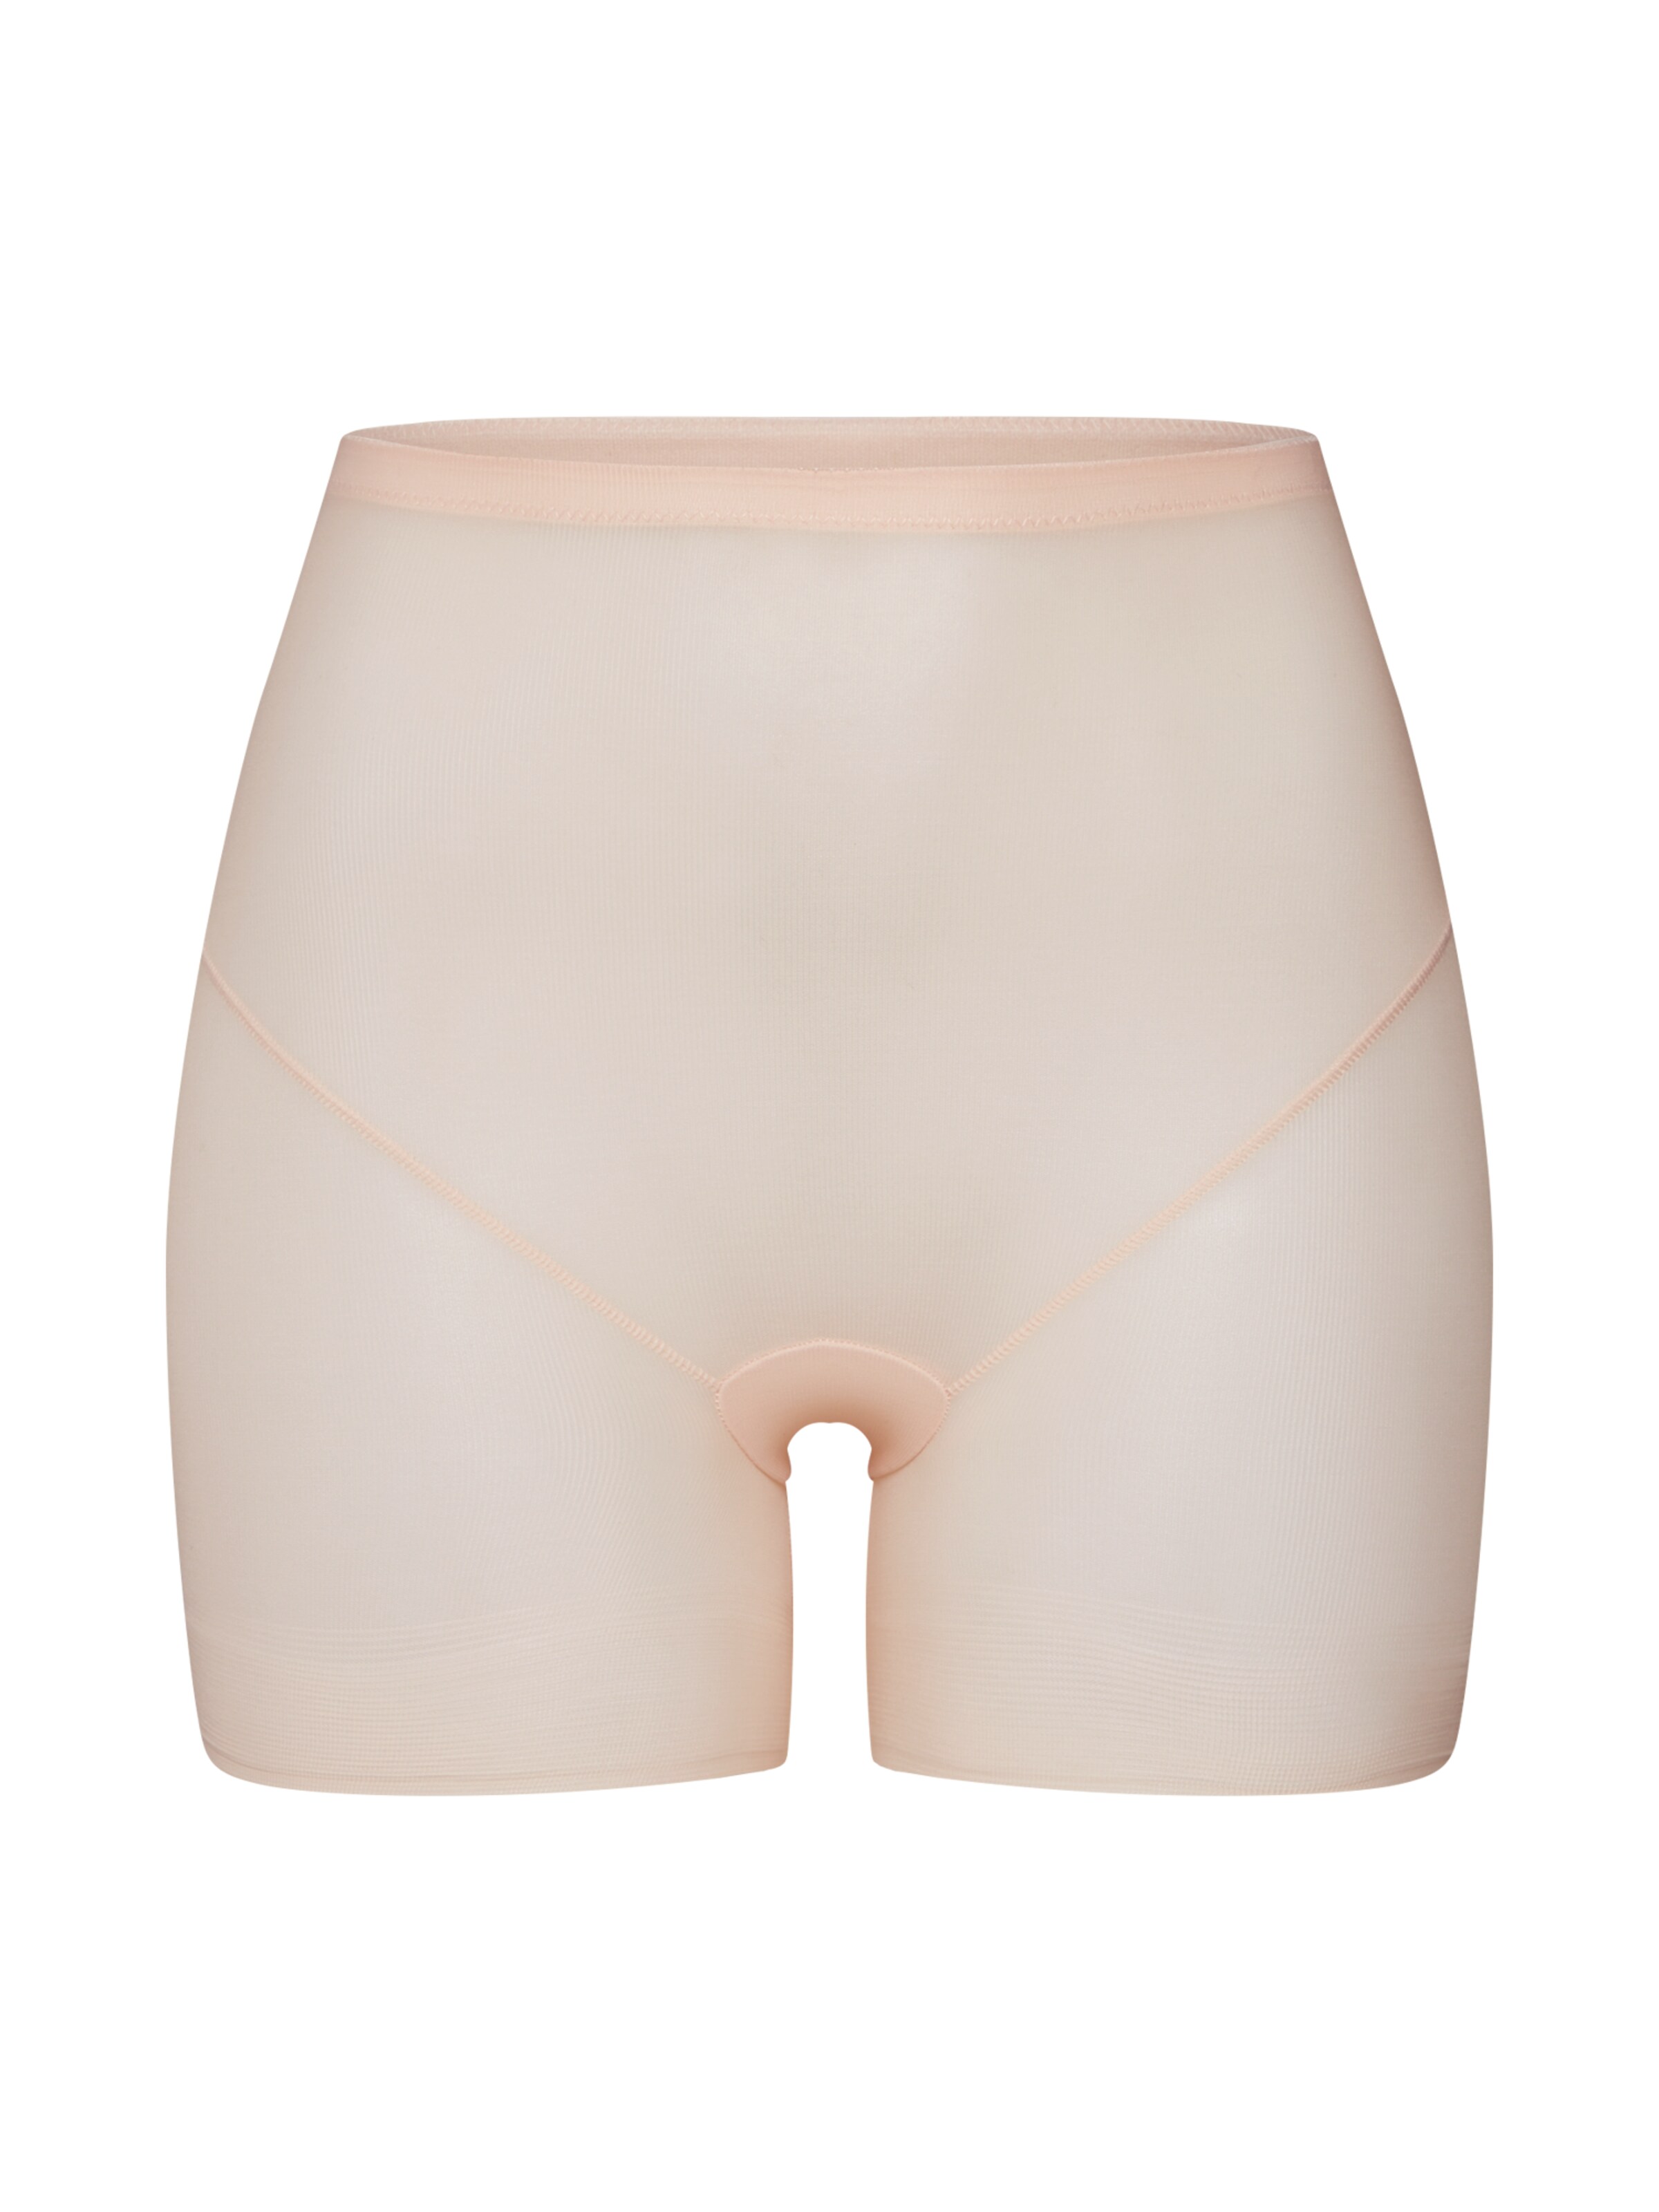 Abbigliamento bL9K0 MAGIC Bodyfashion Pantaloni modellanti Lite Short in Nudo 